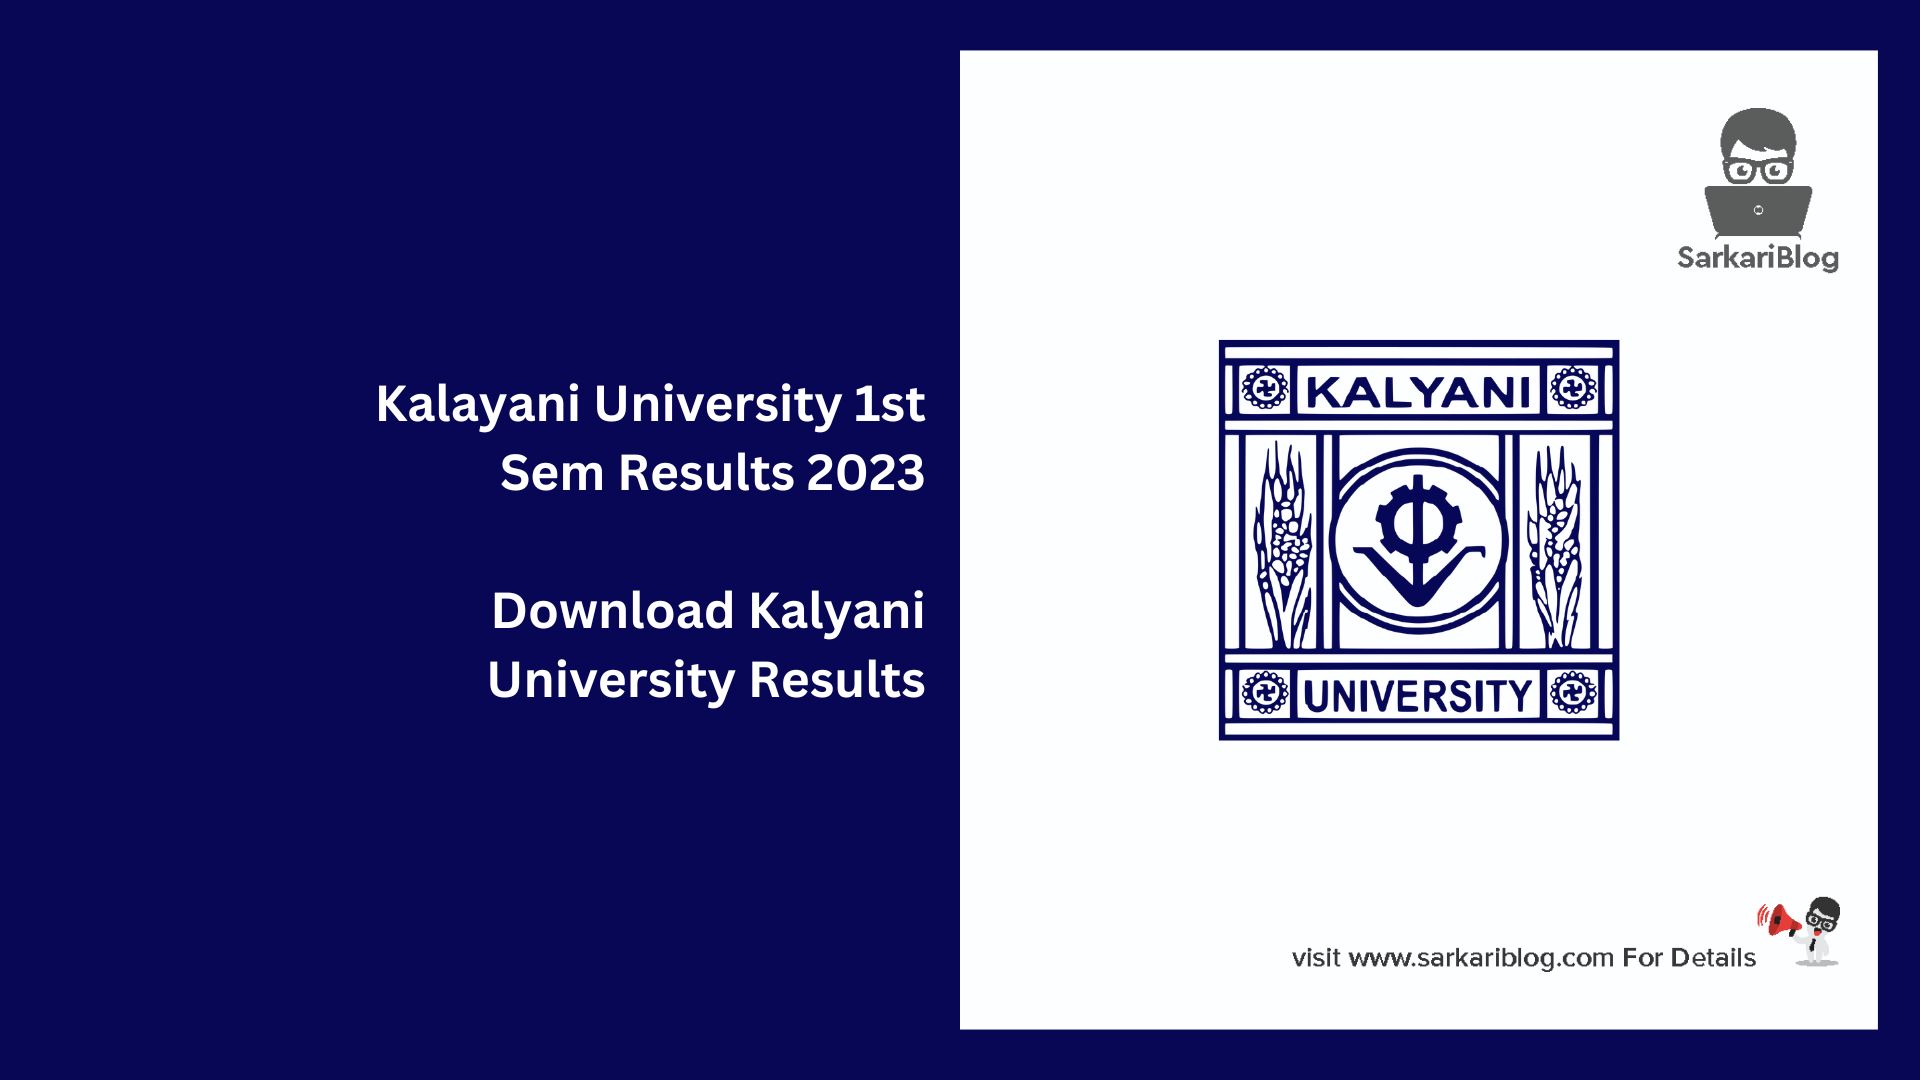 Kalayani University 1st Sem Results 2023